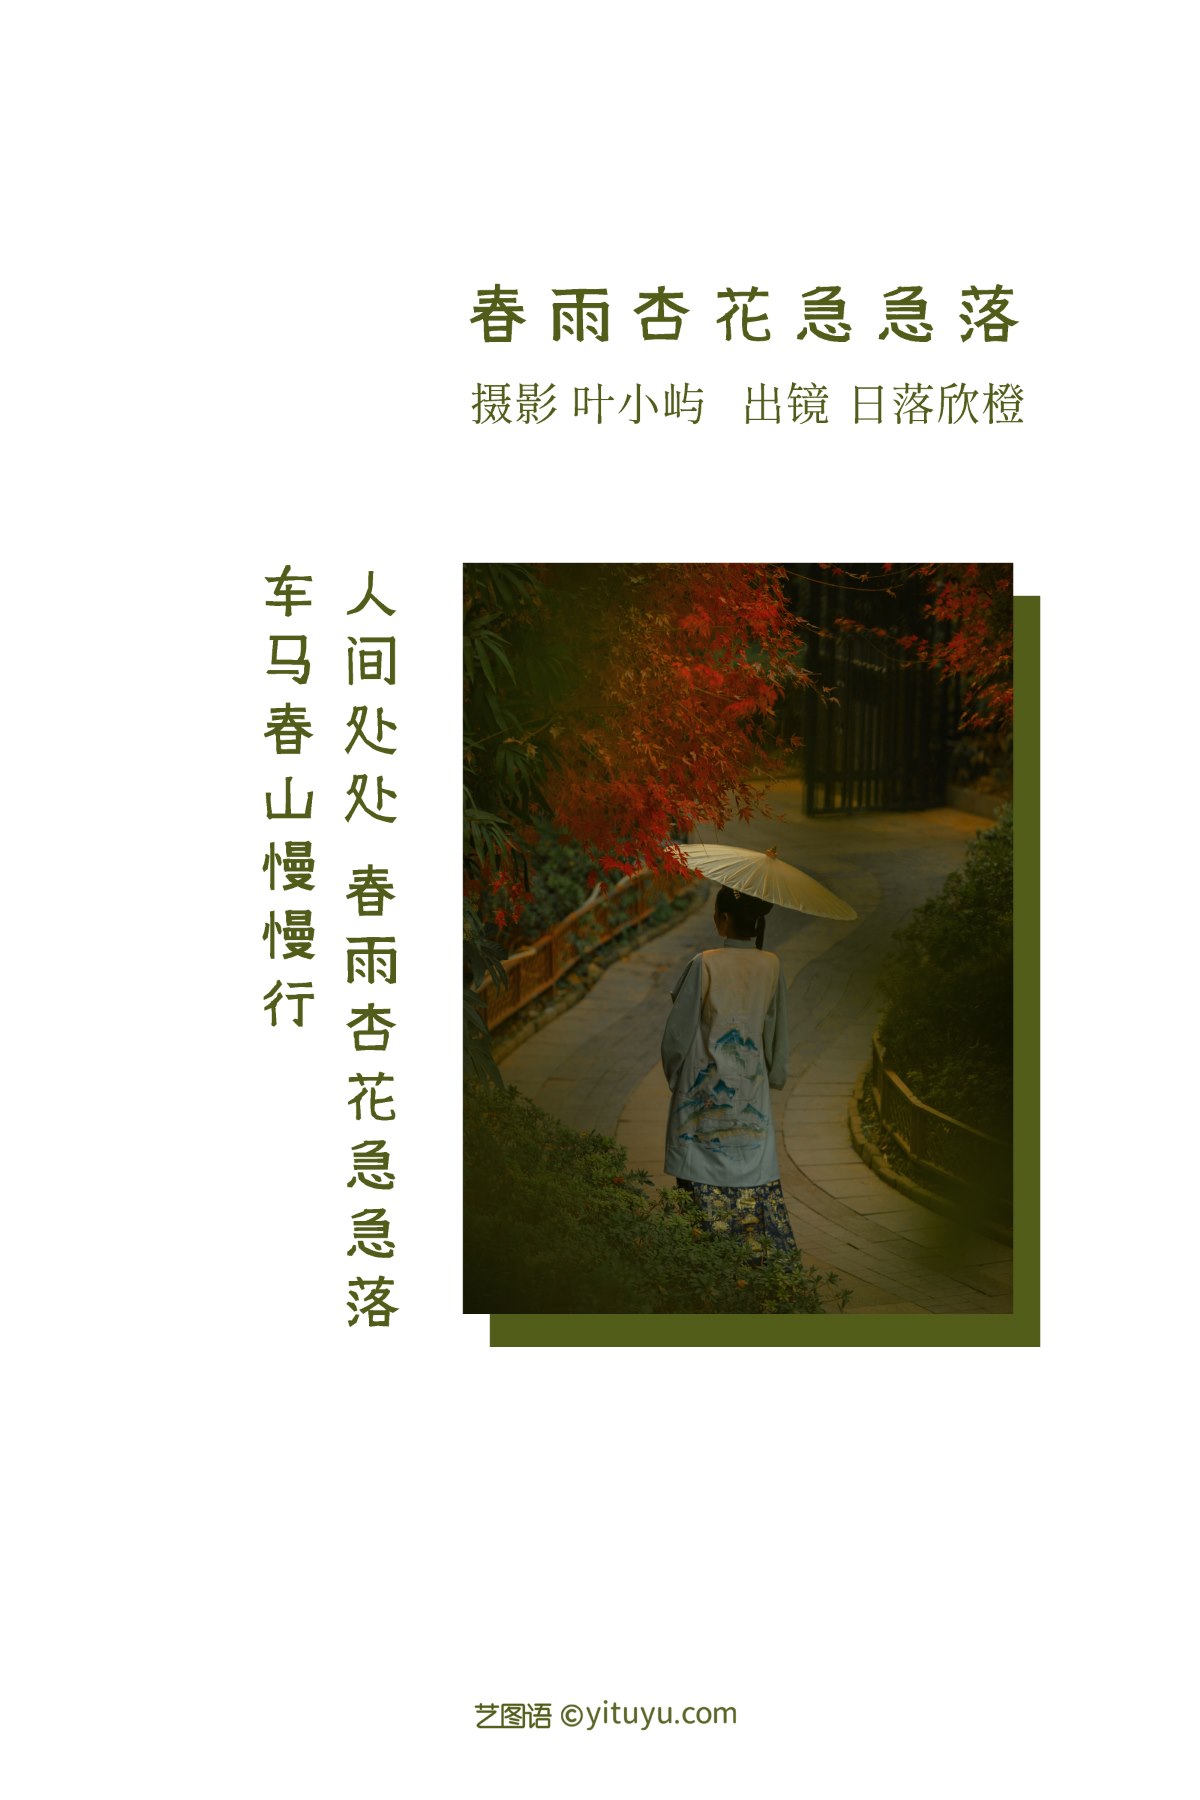 YiTuYu艺图语 Vol 2344 Ri Luo Xin Cheng 0001 4778192648.jpg